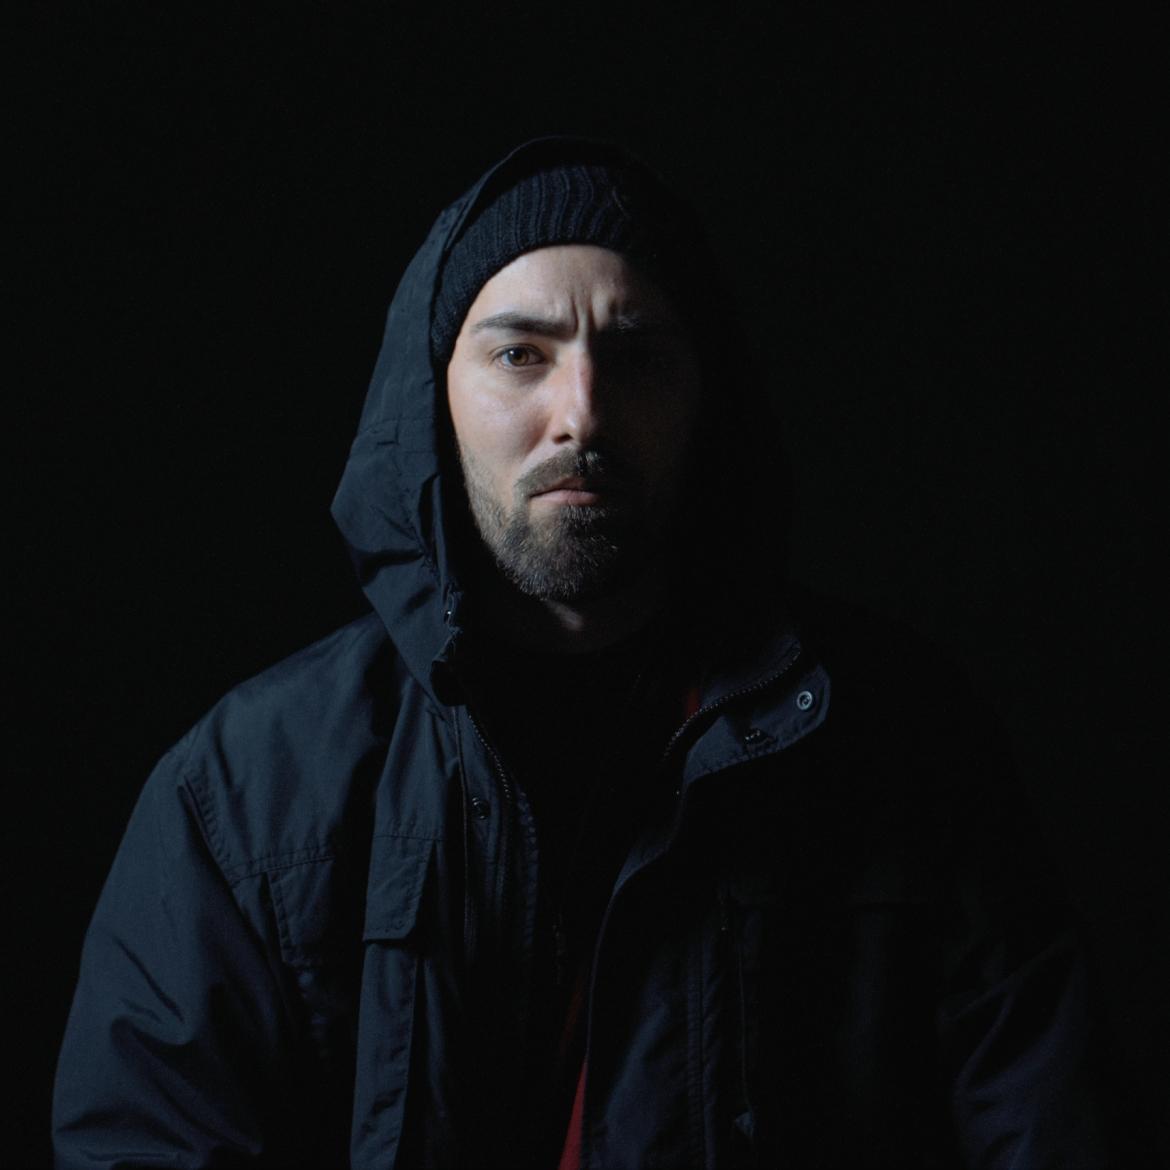 Bild des Künstlers "Accid1" in schwarzer Kapuzenjacke vor schwarzem Hintergrund.